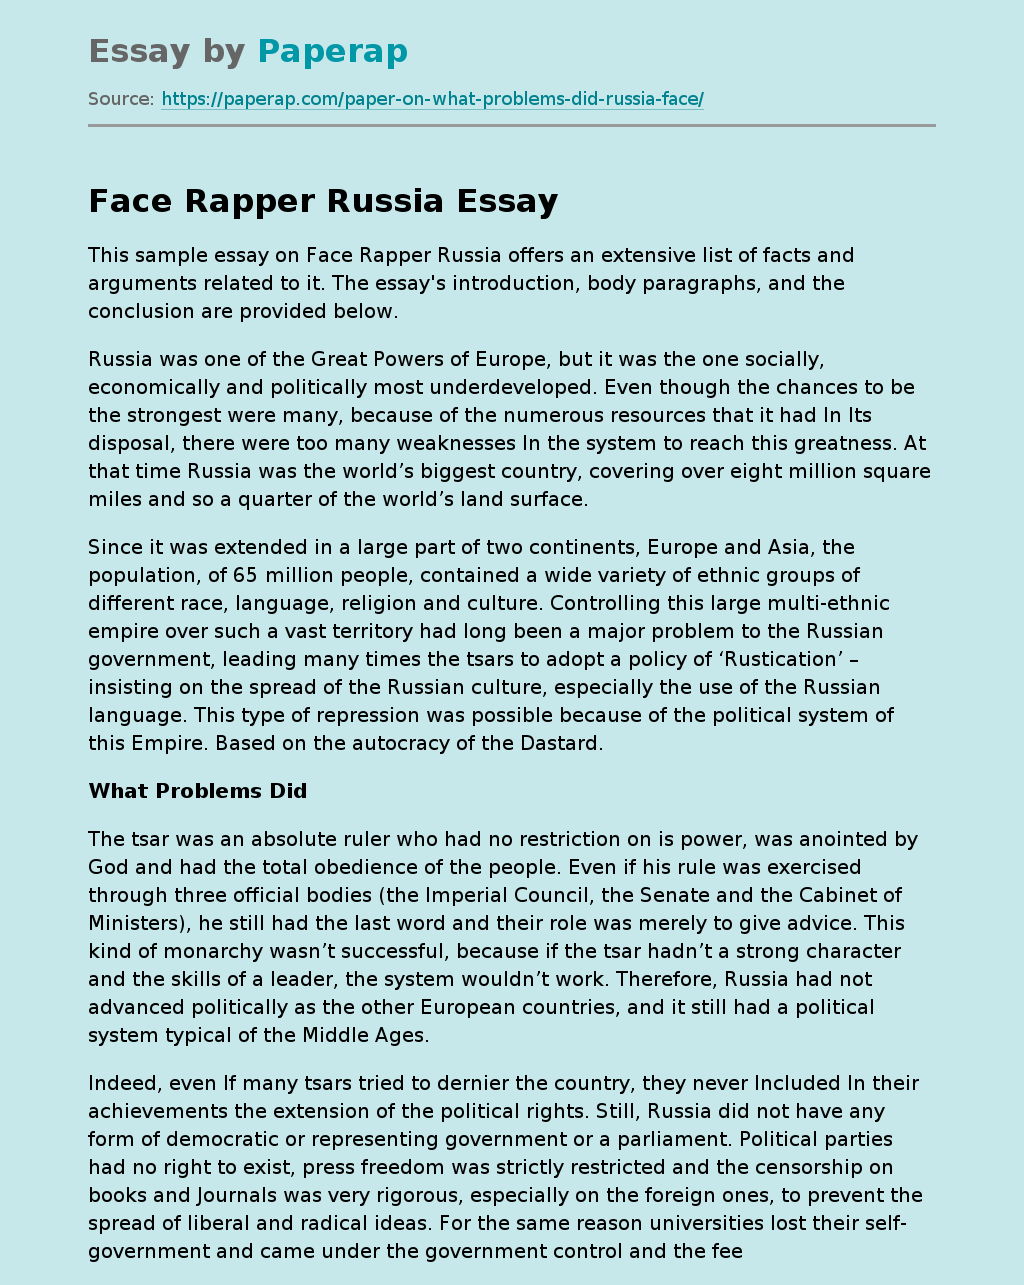 Face Rapper Russia